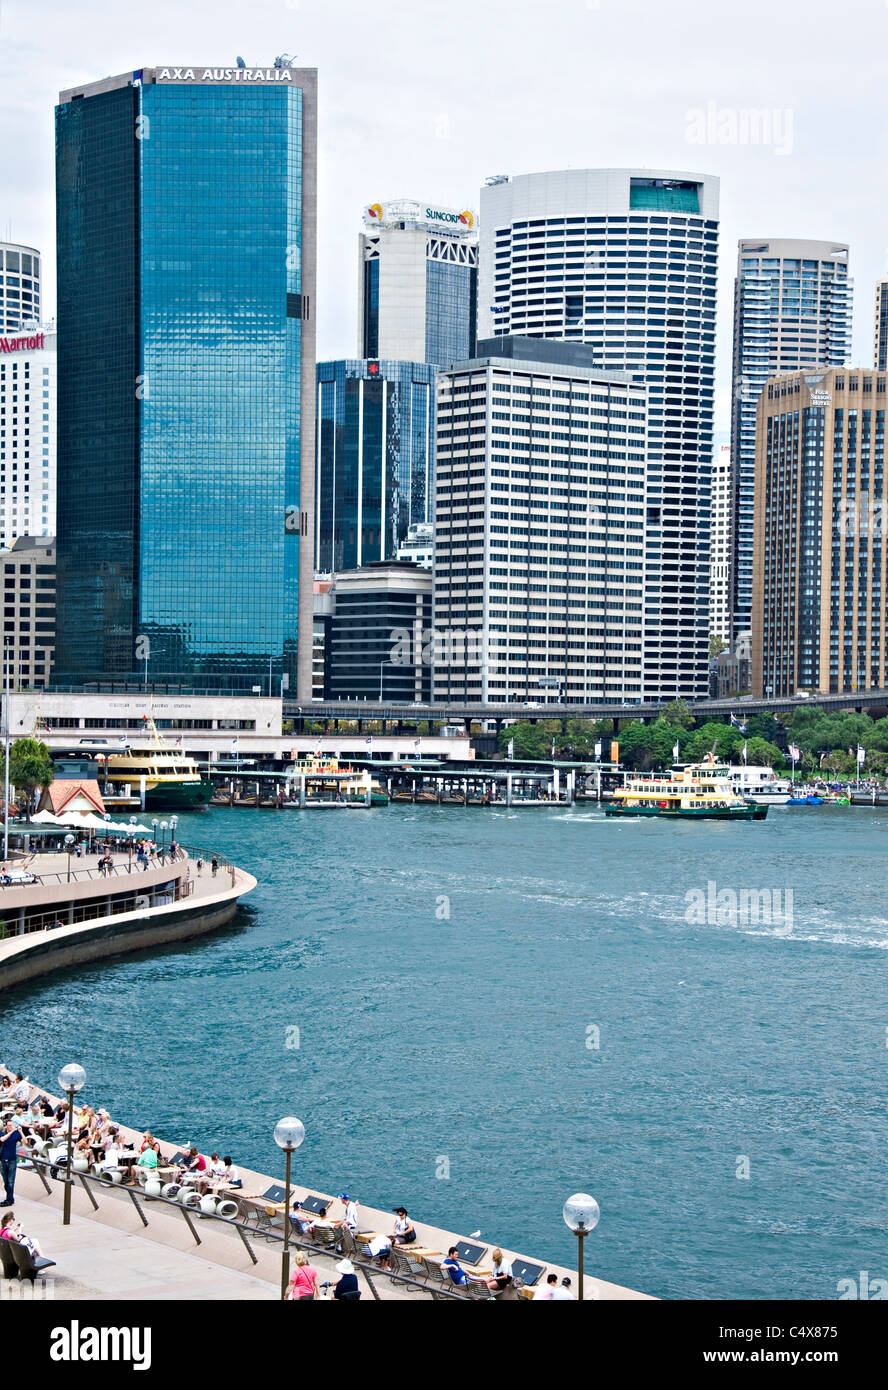 Le Sydney Skyline et le centre financier à Circular Quay Ferry Terminal et les touristes de l'Opéra de Sydney , Australie Banque D'Images